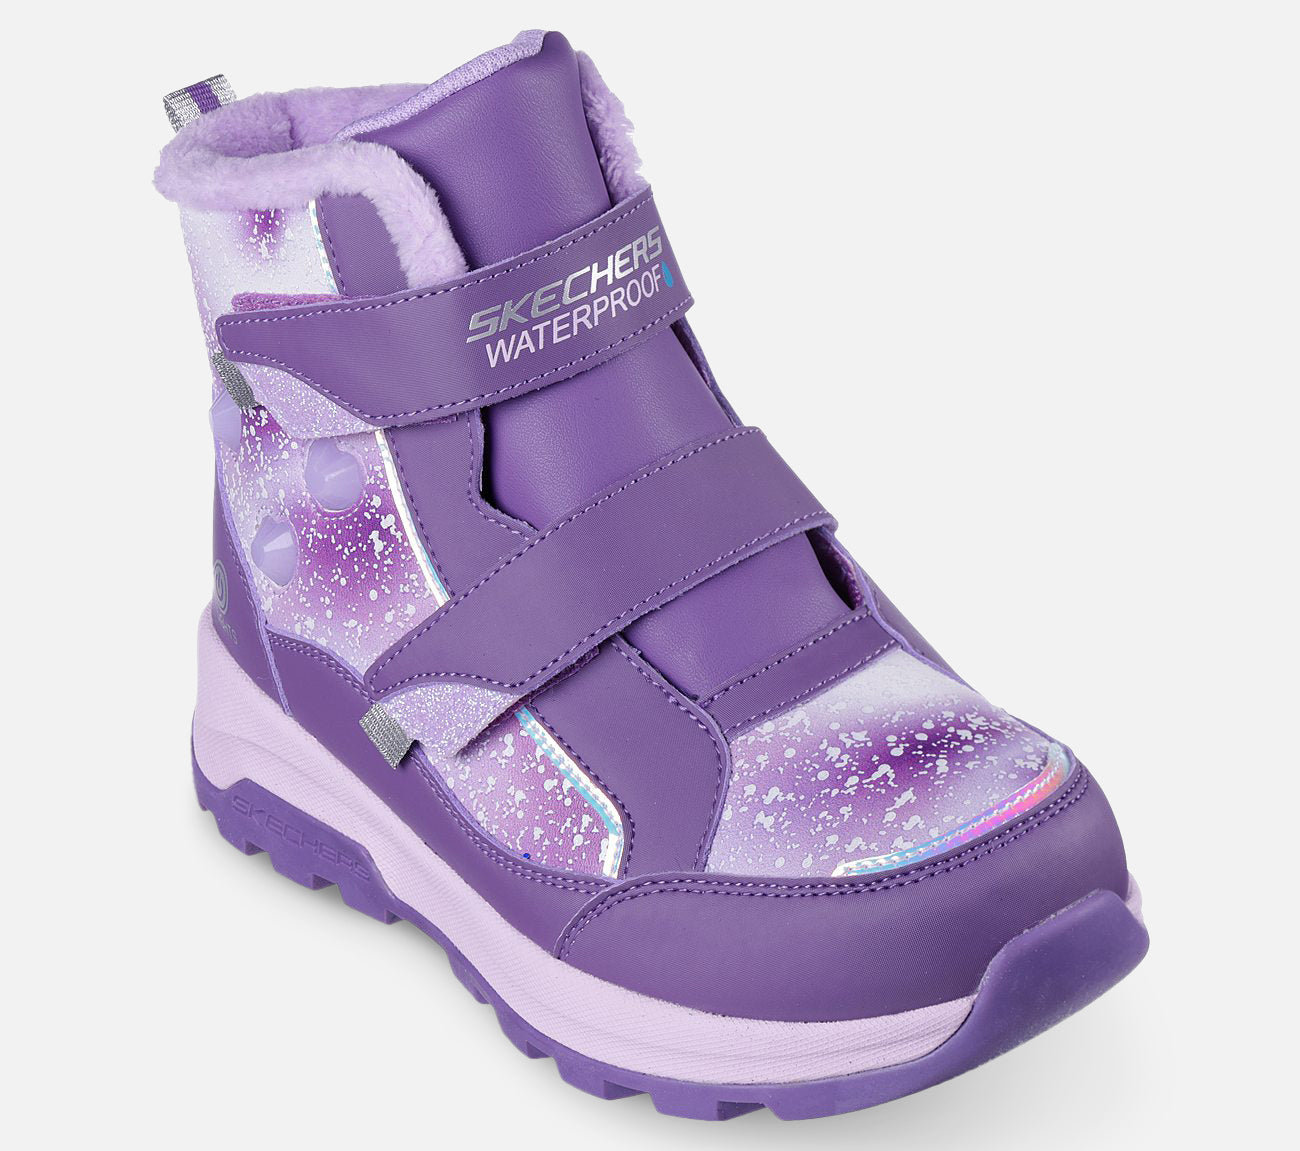 Storm Blazer - Waterproof Boot Skechers